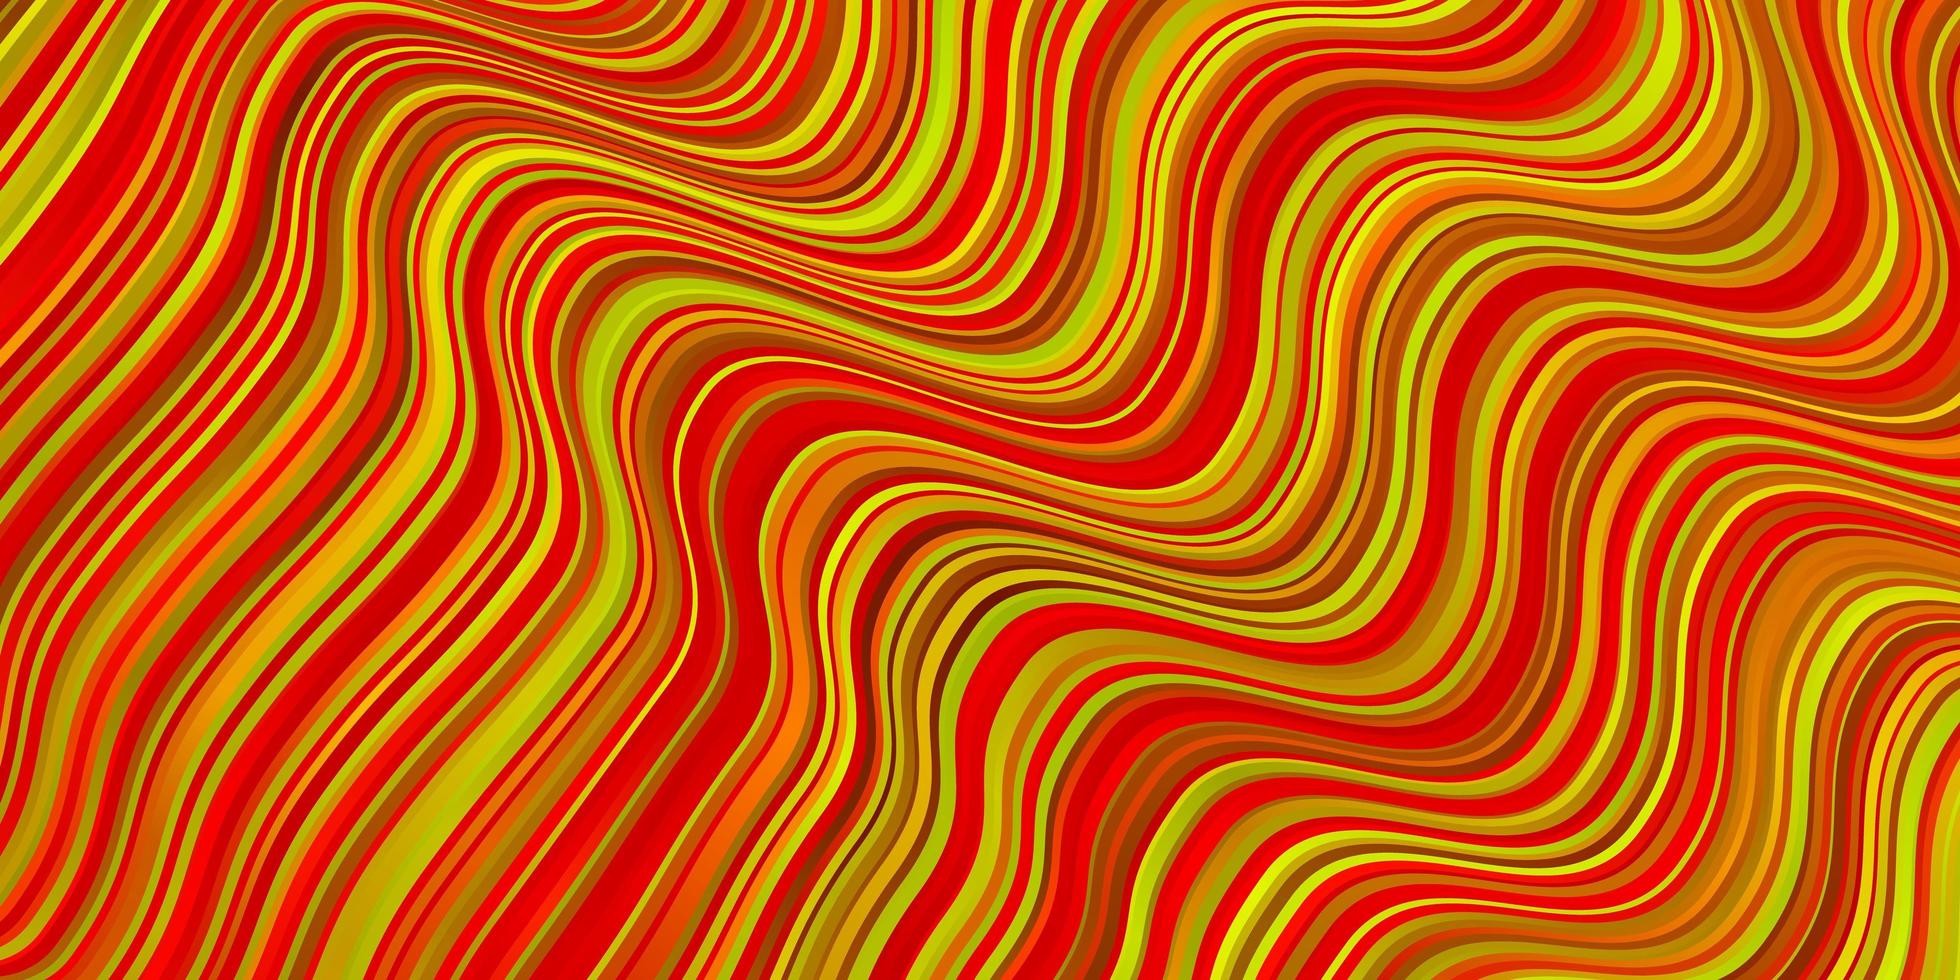 fundo vector vermelho e amarelo escuro com linhas dobradas.